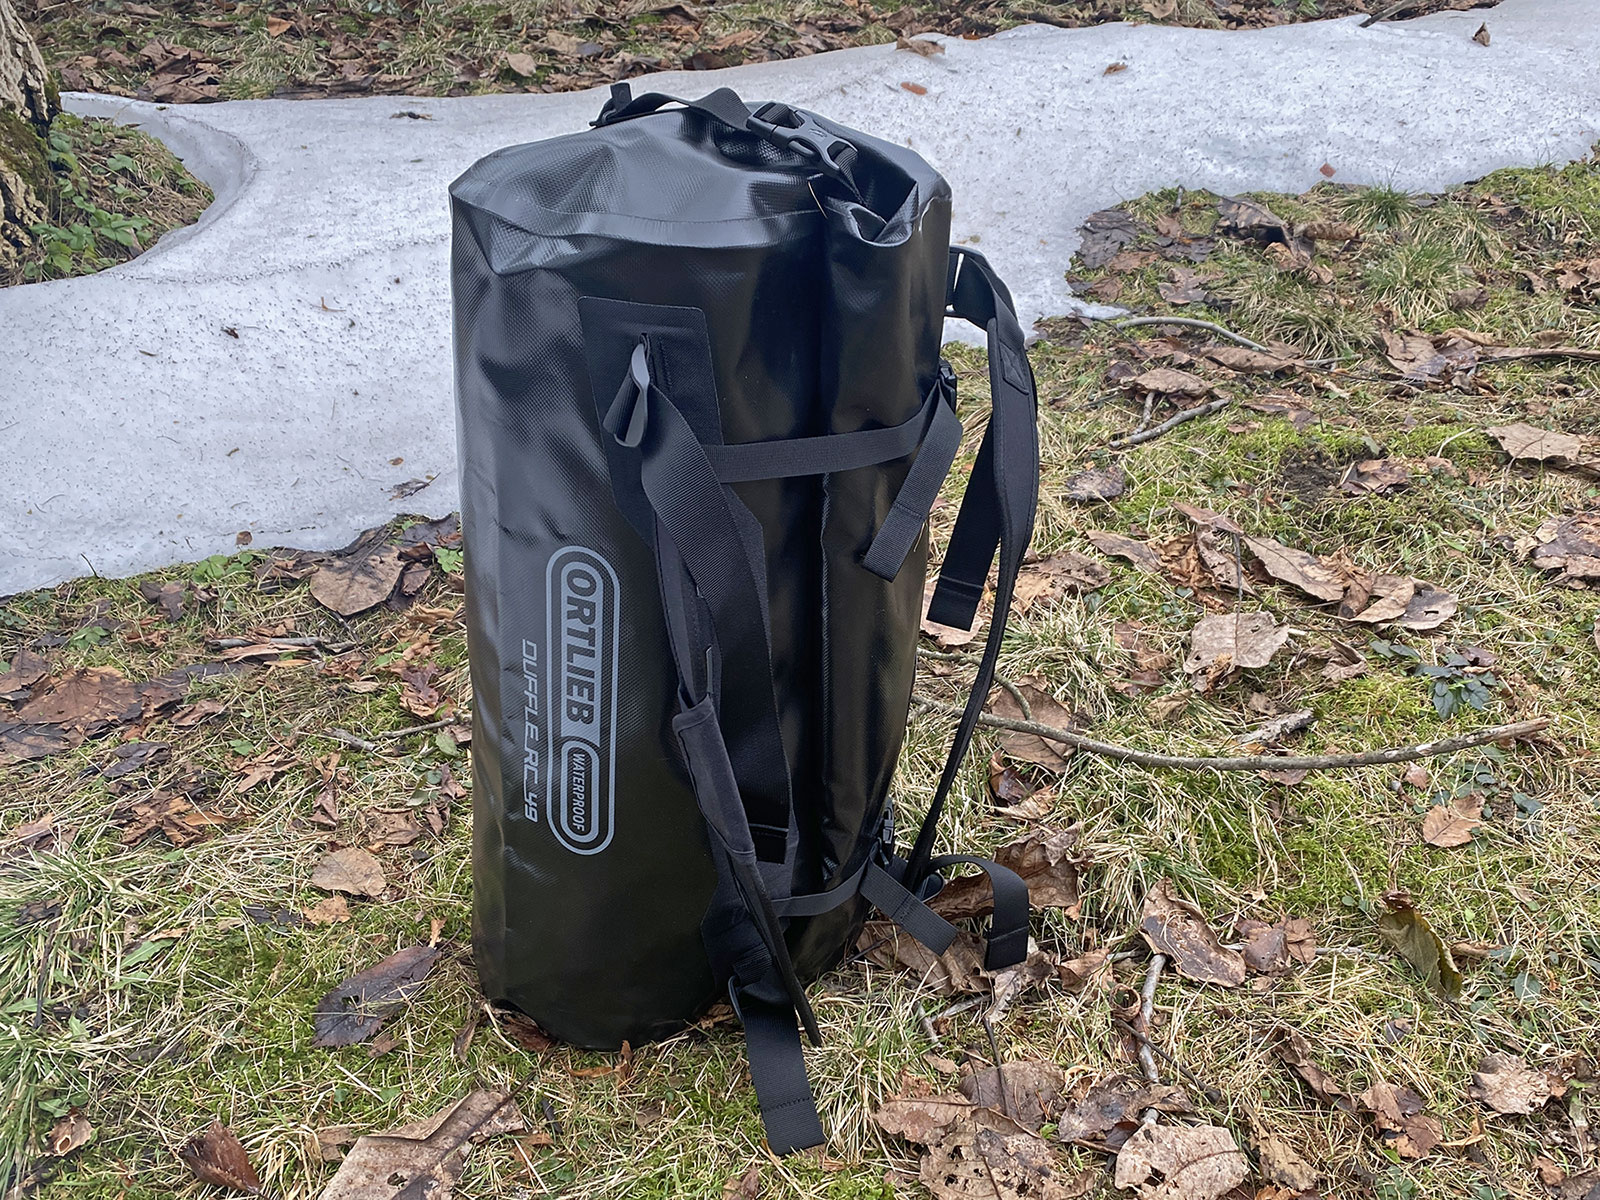 Ortlieb Duffle RC 49L Review: waterproof backpack dufflebag,standing